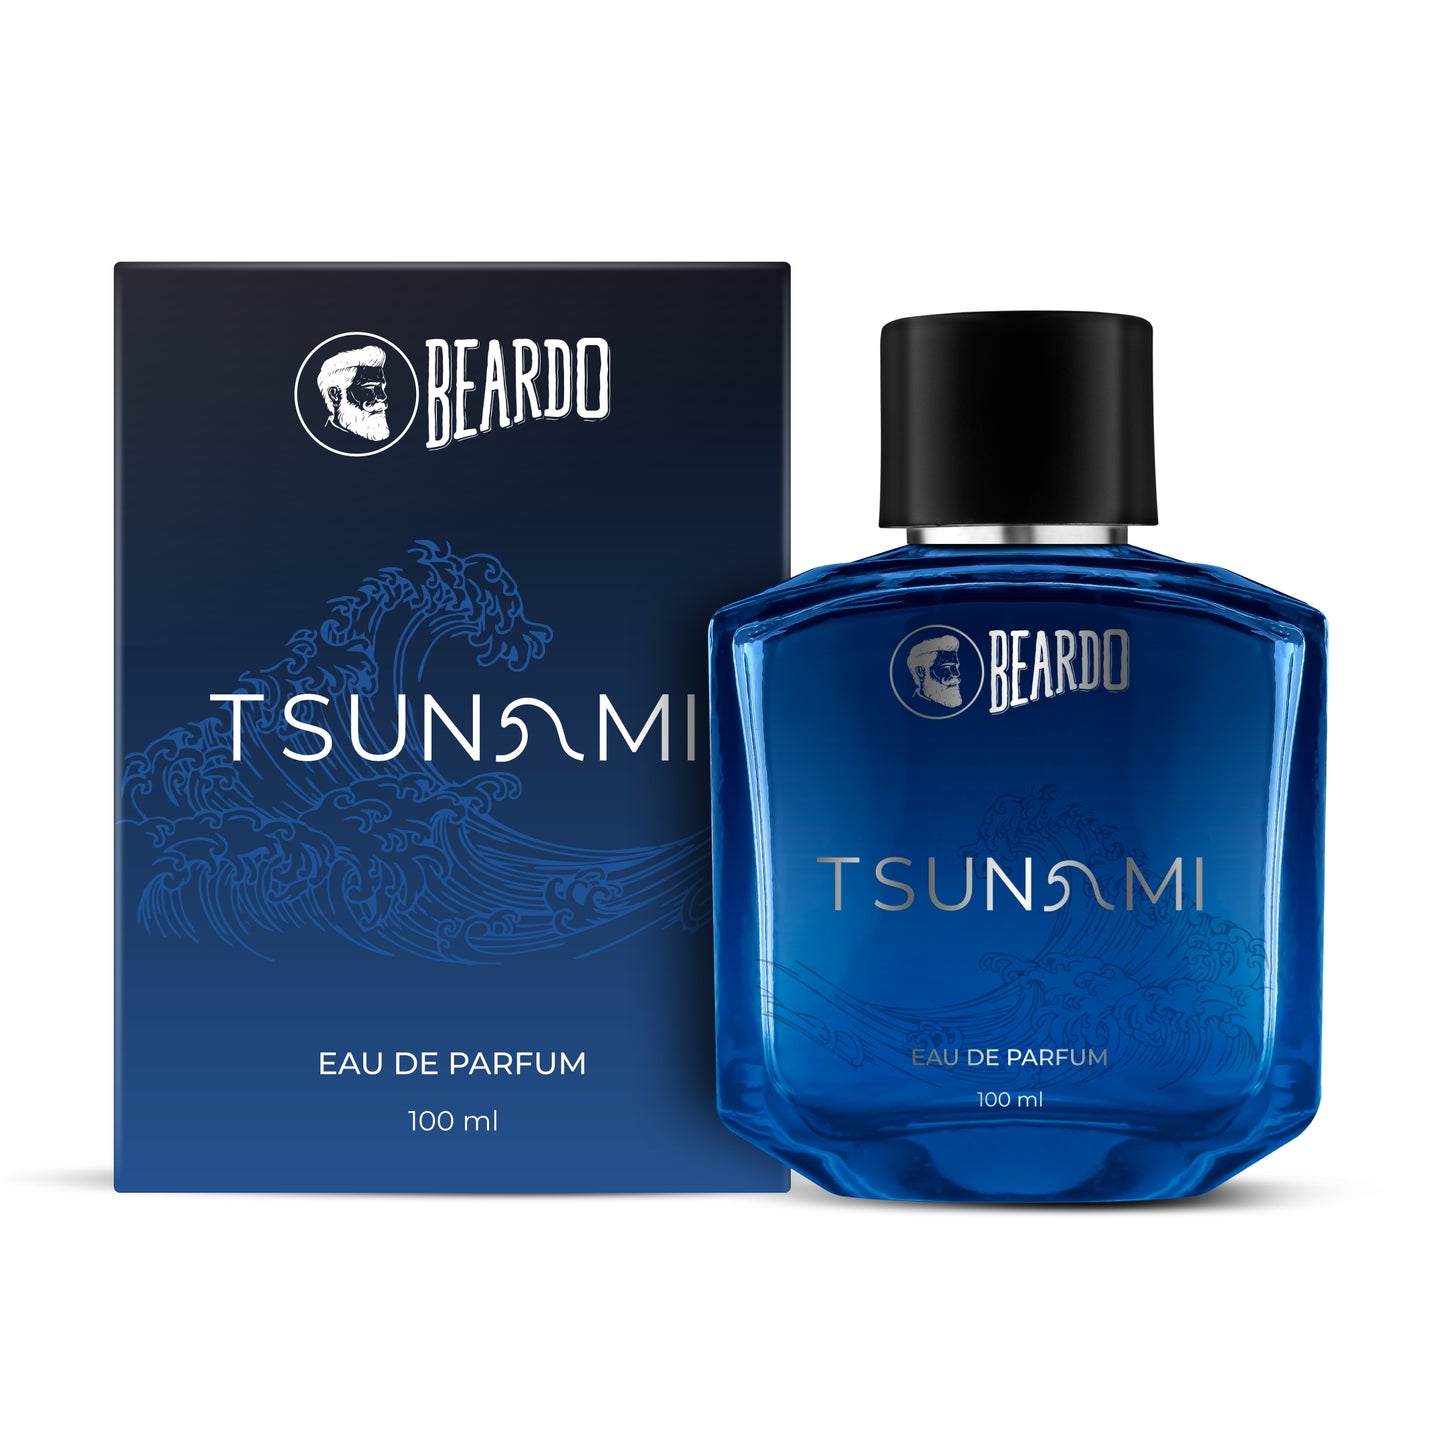 strong perfume for men, intense perfume for men, beardo tsunami, best long lasting perfumes for men, eau de parfum for men, best long lasting perfume